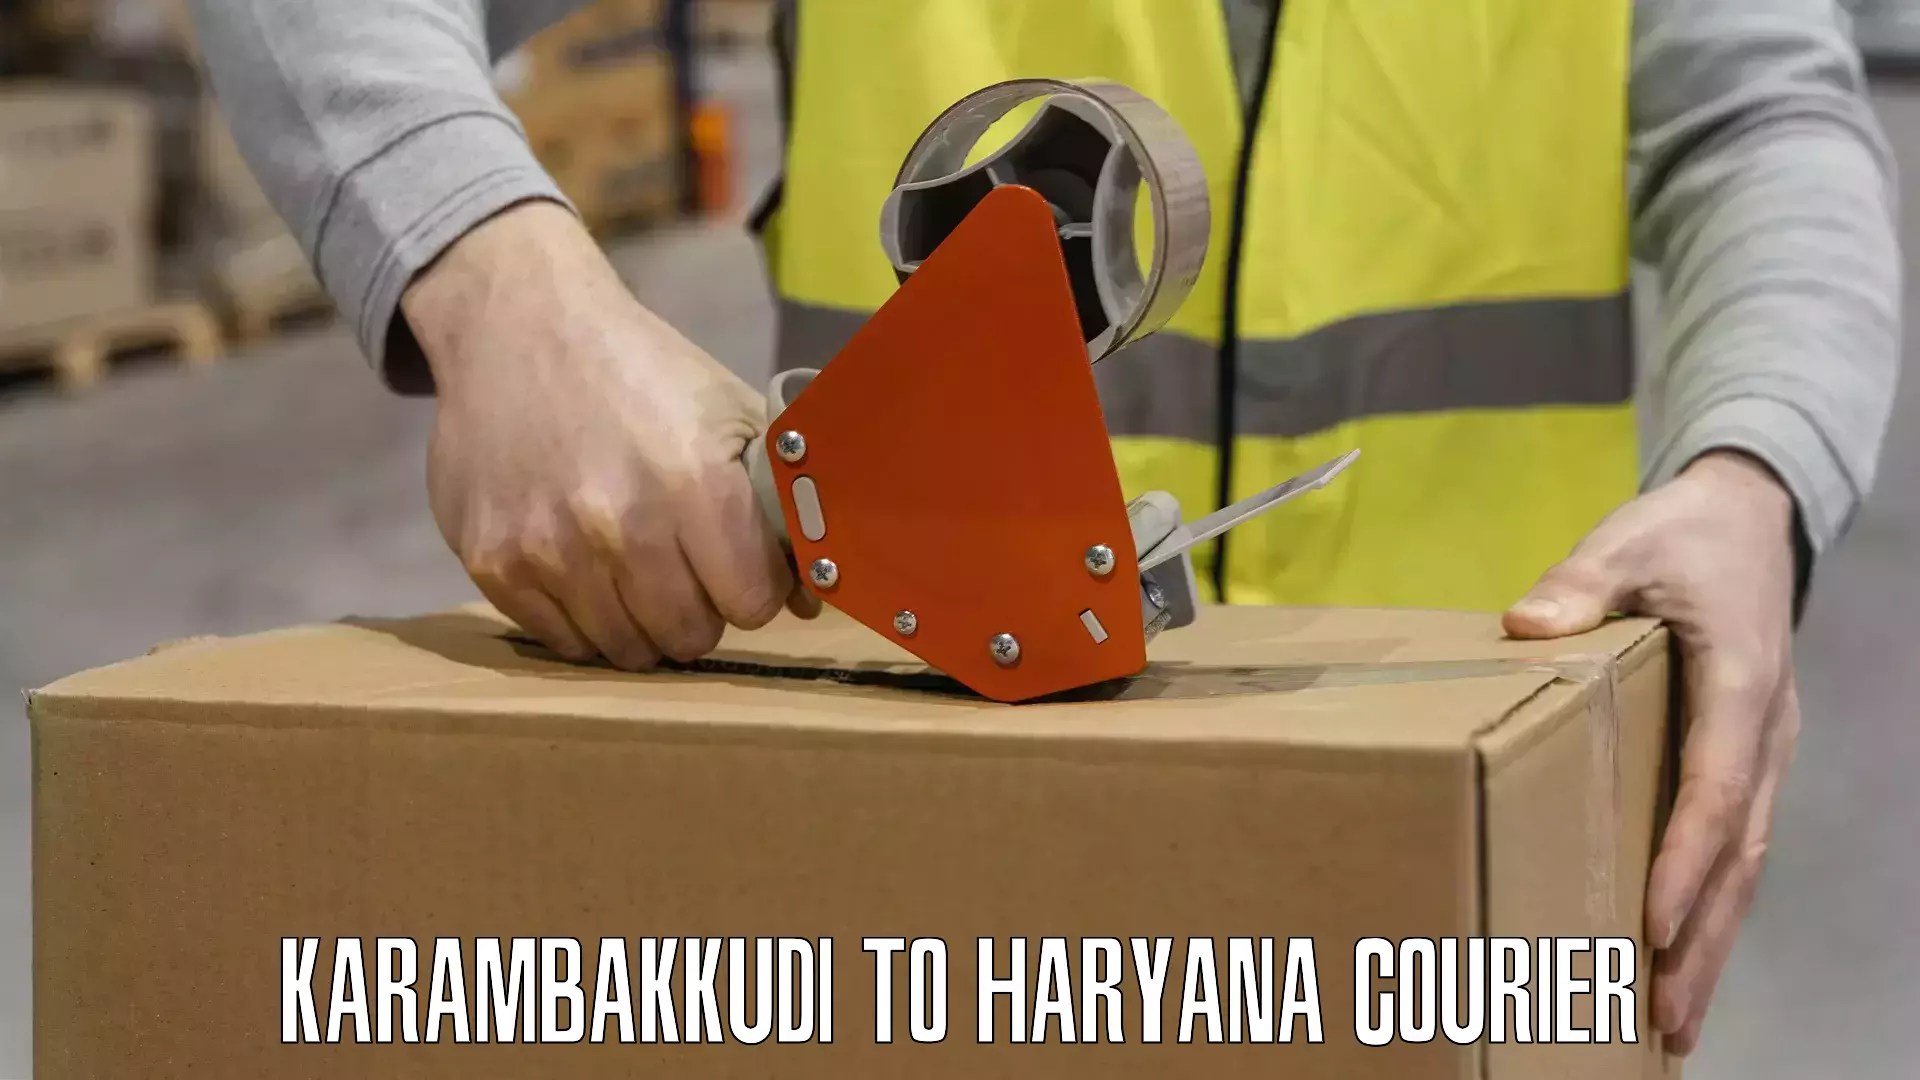 State-of-the-art courier technology Karambakkudi to Kaithal